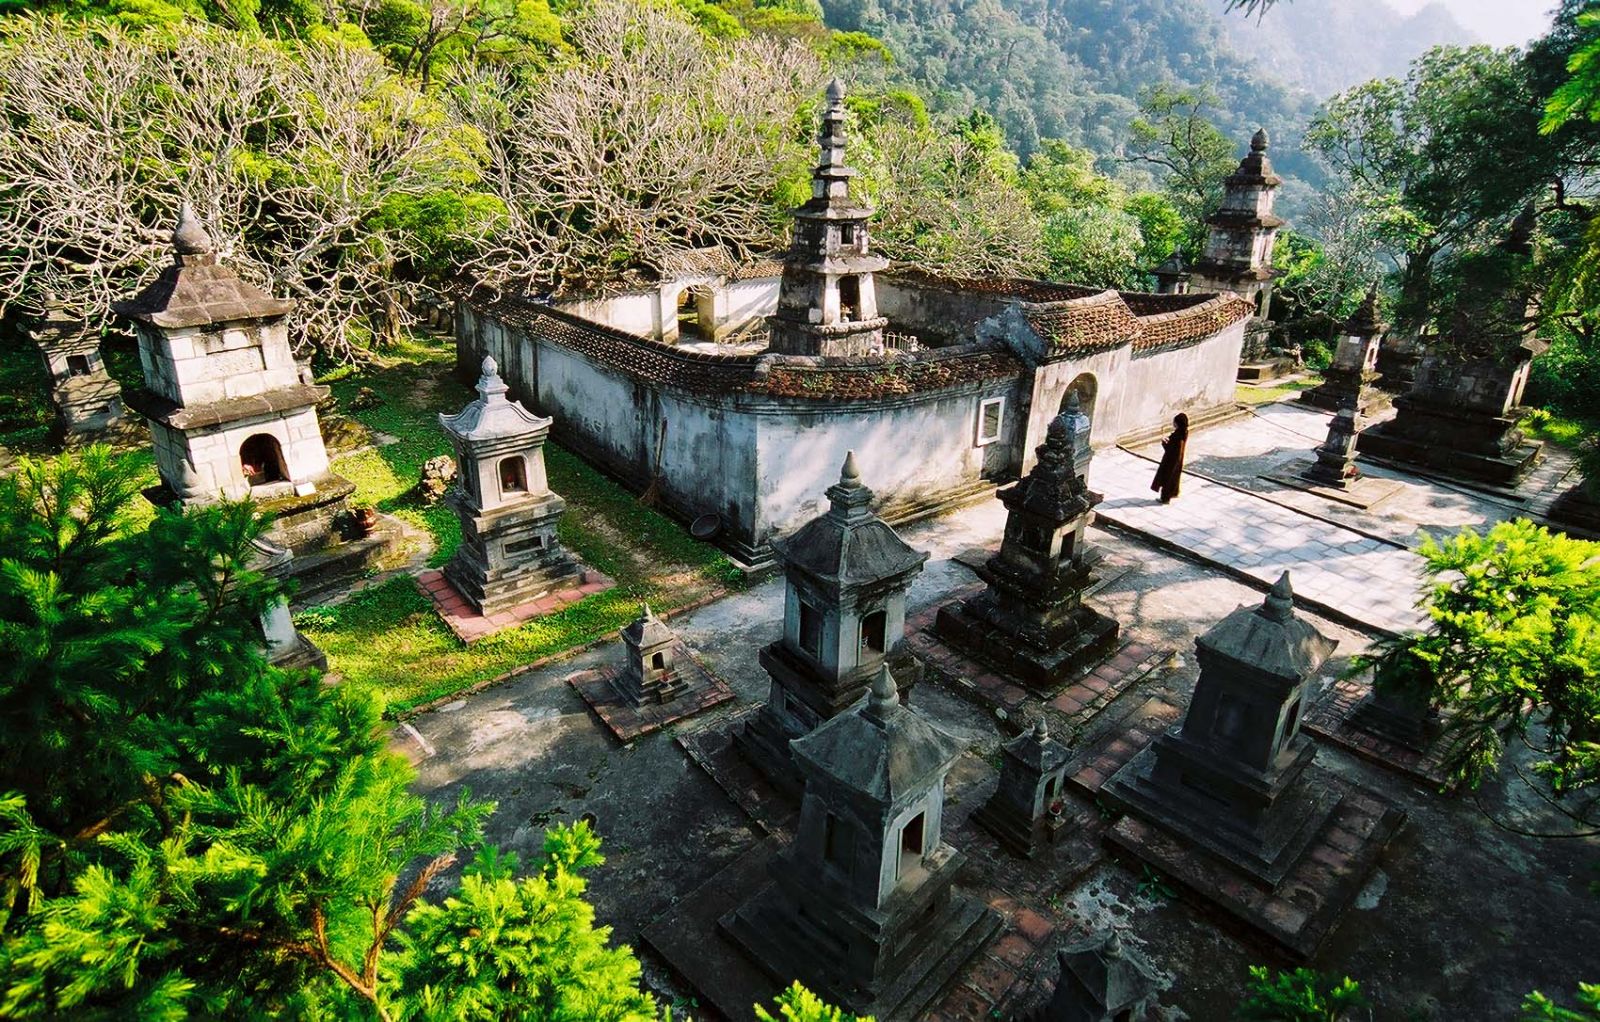 Vườn tháp Huệ Quang, nơi có Tháp Tổ lưu giữ xá lị của Phật hoàng Trần Nhân Tông cùng hơn 40 bảo tháp đặt dưới chân chùa Hoa Viên.